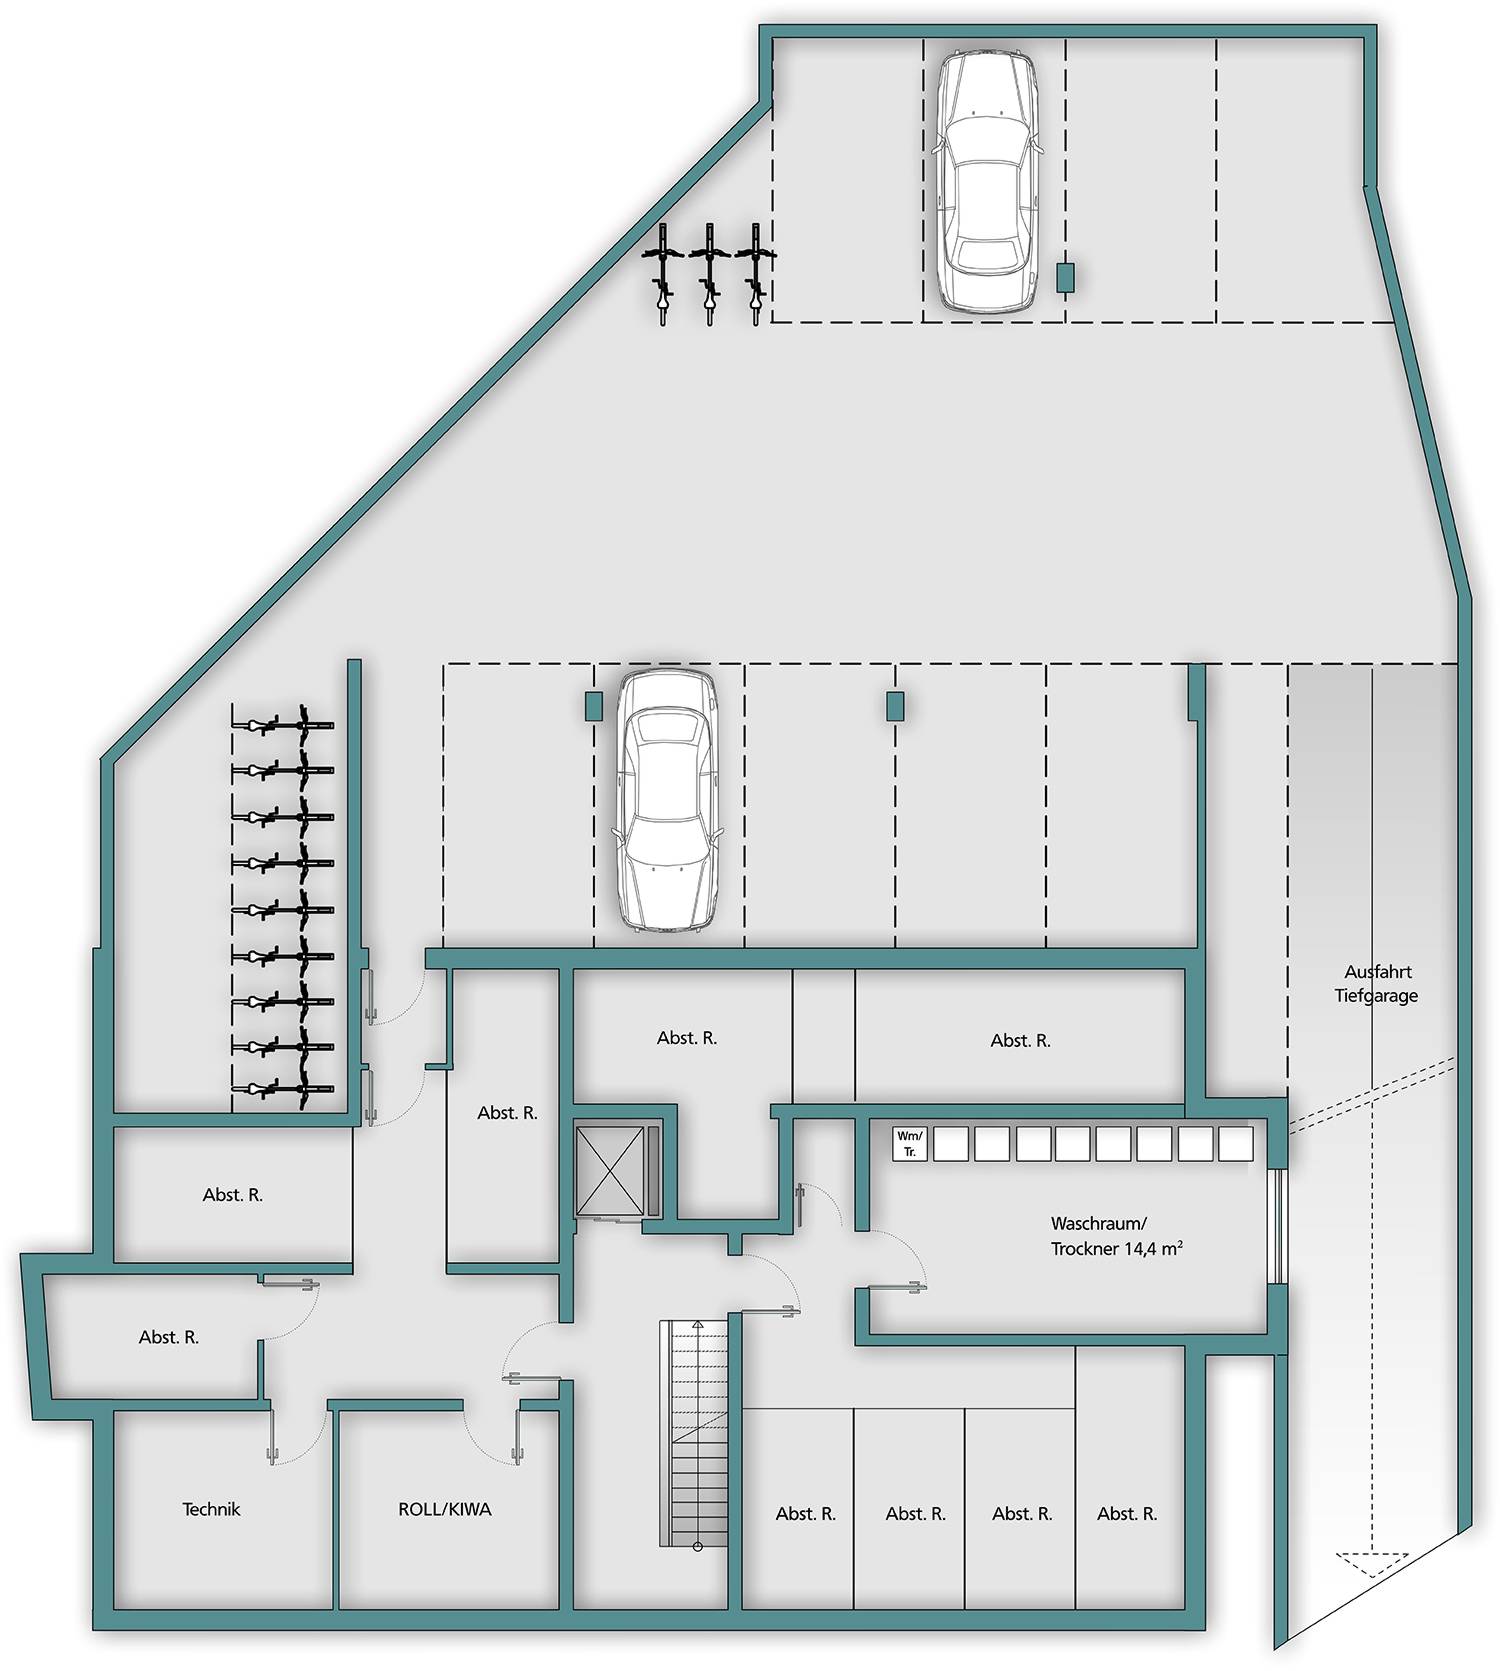 2D-Illustration eines Grundrisses vom Untergeschoss mit Tiefgarage und Einfahrtsrampe eines Mehrfamilienhauses. Erstellt im Rahmen des Auftrages für 3D-Architektur-Visualisierungen und 2D-Grundrissillustrationen des Bauvorhabens MFH Bollengässle, Dagersheim für die Firma mmb-bauen aus Steinenbronn im Jahre 2021